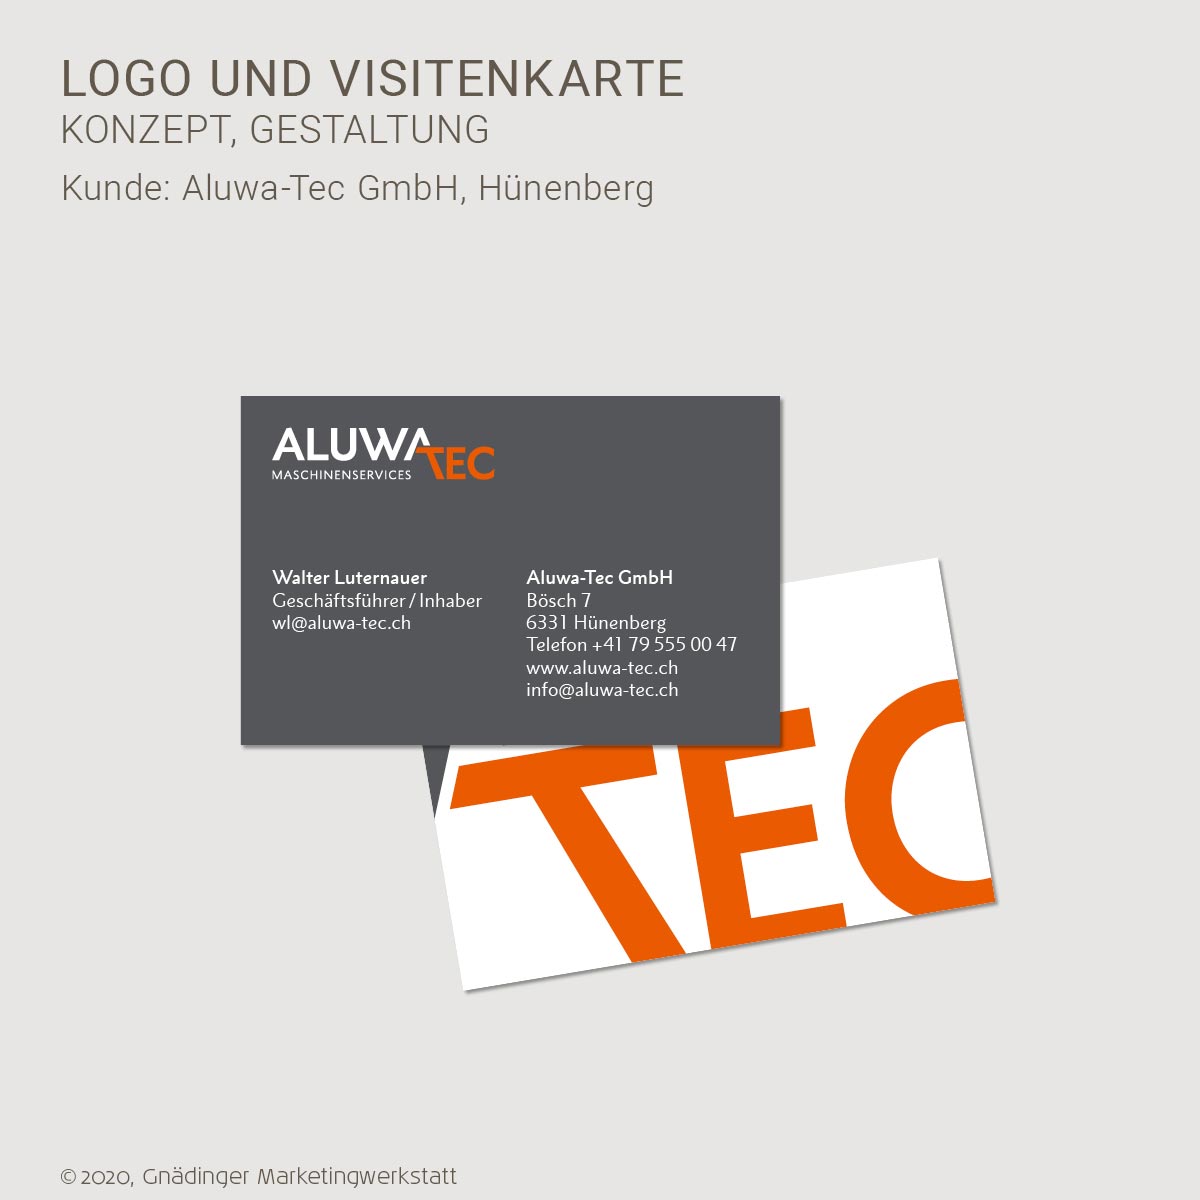 WEB1_GMW_Projekt_Aluwa-Tec-Visitenkarte_01-2020_1200x1200px_RGB